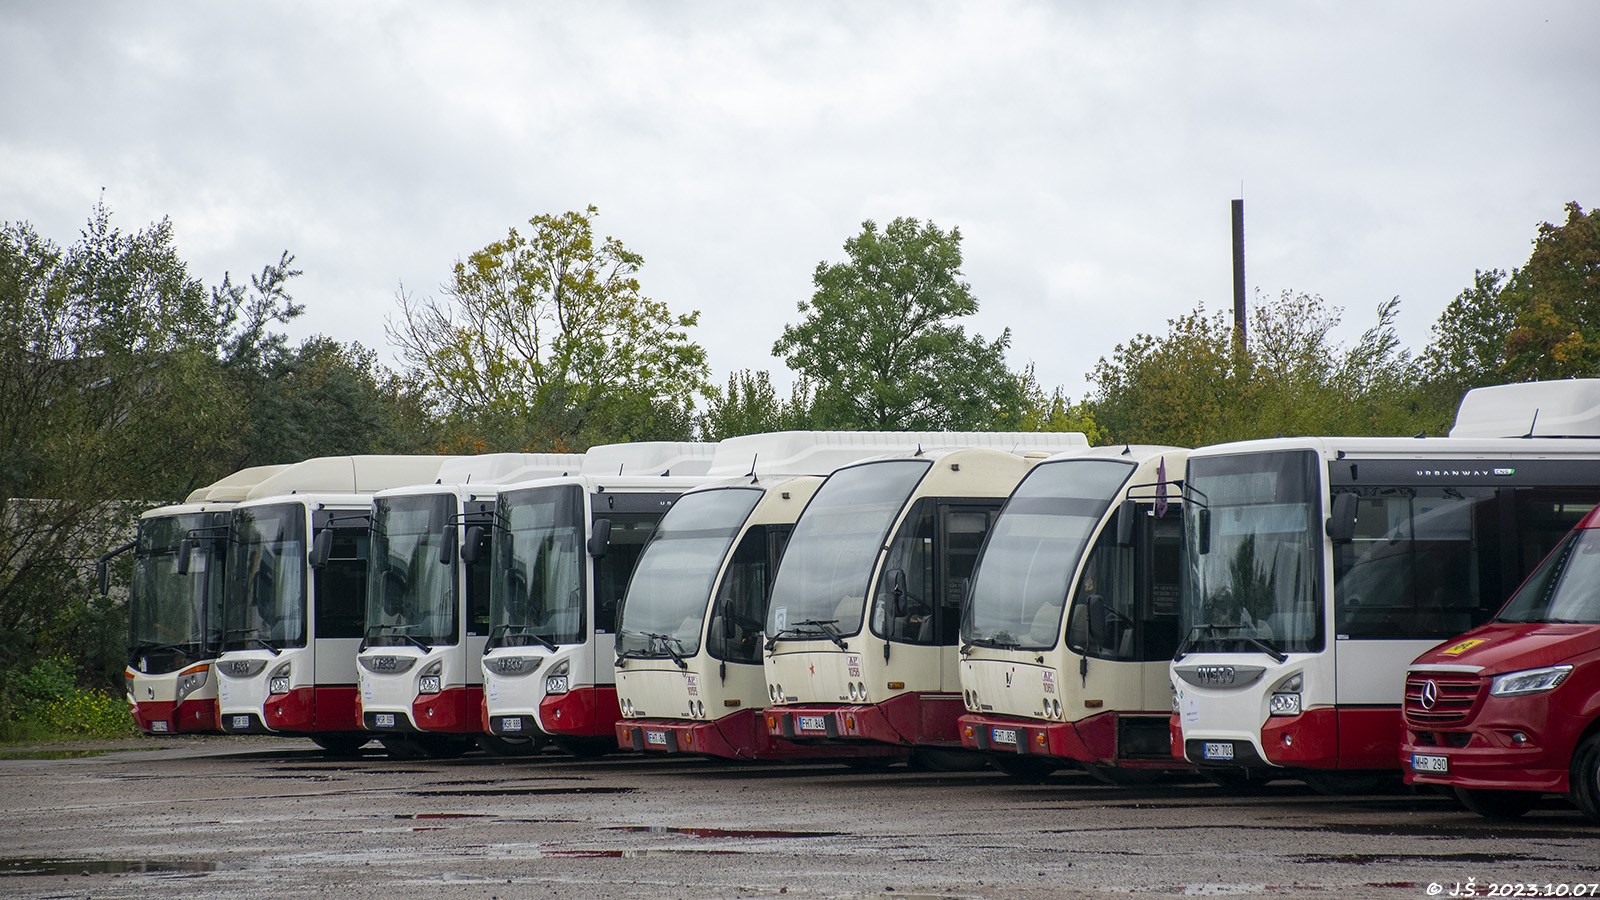 Litvánia — Bus depots